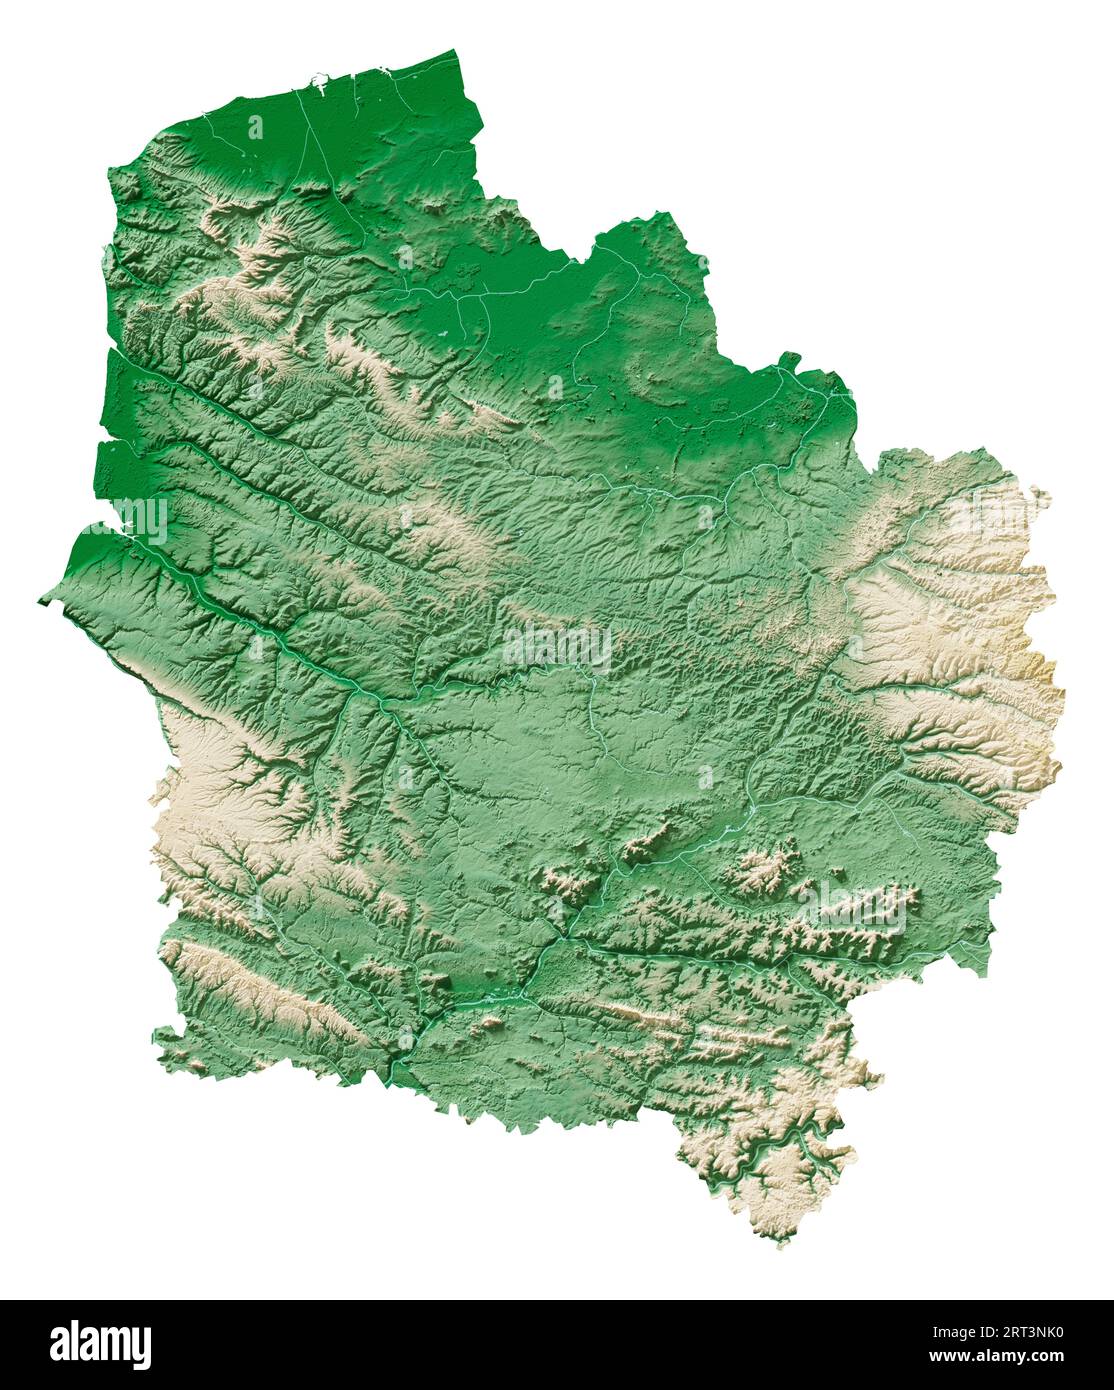 Hauts-de-France. Une région de France. Rendu 3D détaillé d'une carte en relief ombré, rivières, lacs. Coloré par l'altitude. Fond blanc pur. Banque D'Images